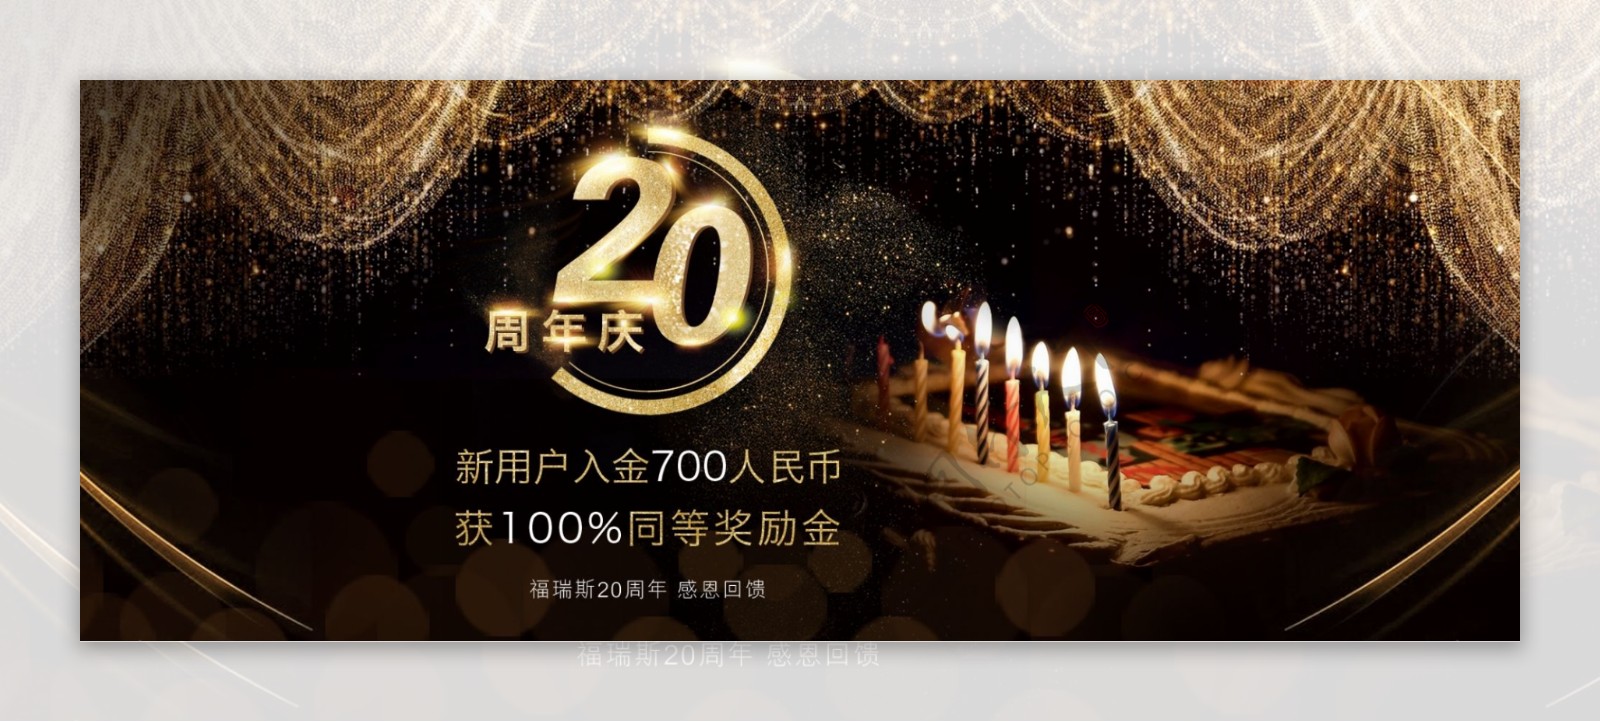 20周年庆banner设计